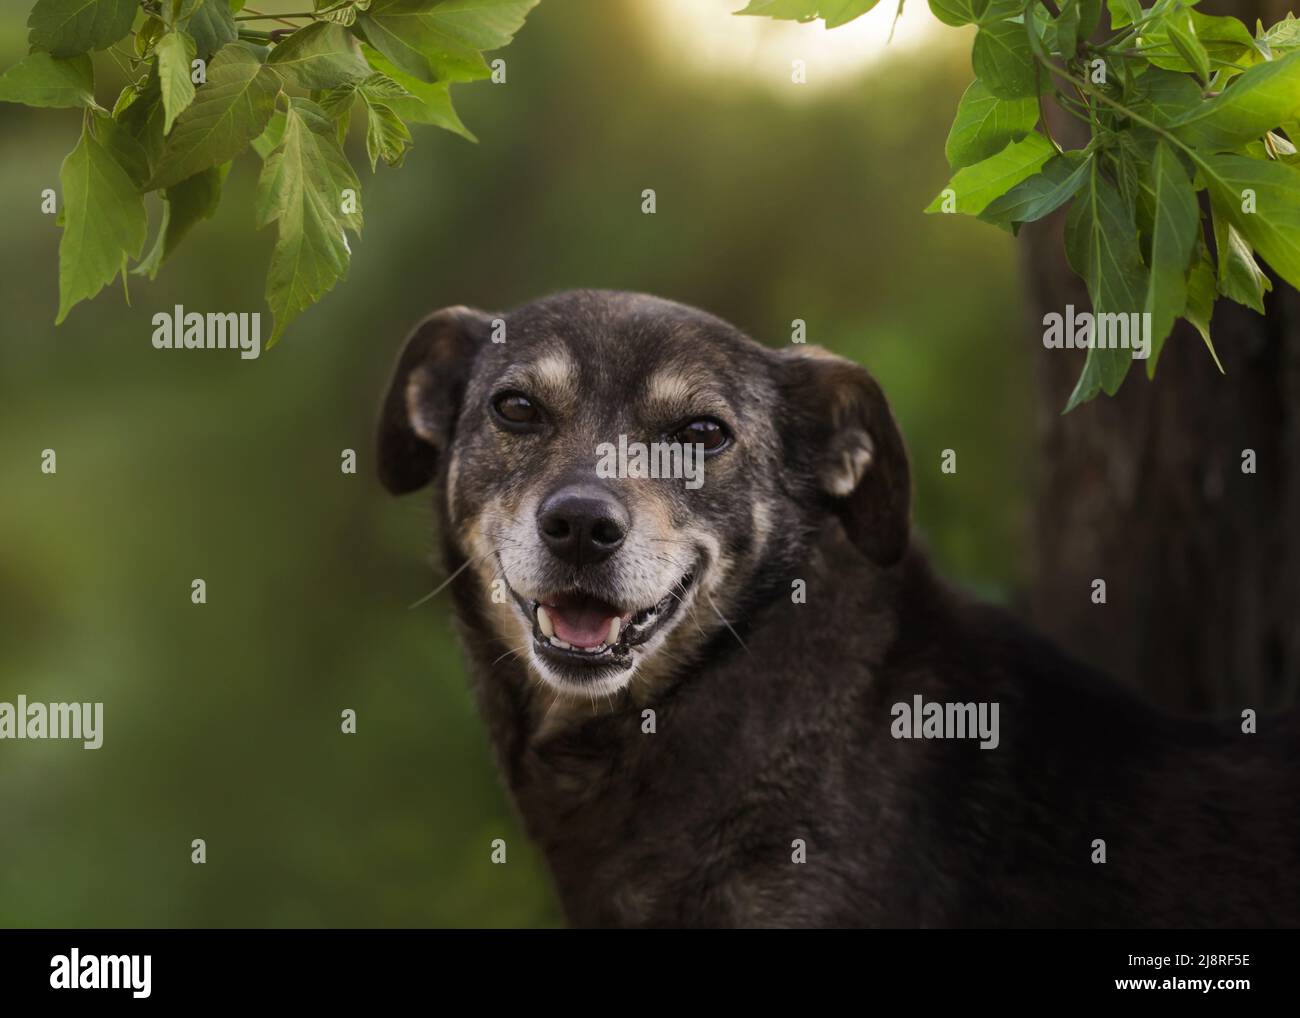 Closeup photo adorable mongrel dog. Art photo dog Stock Photo